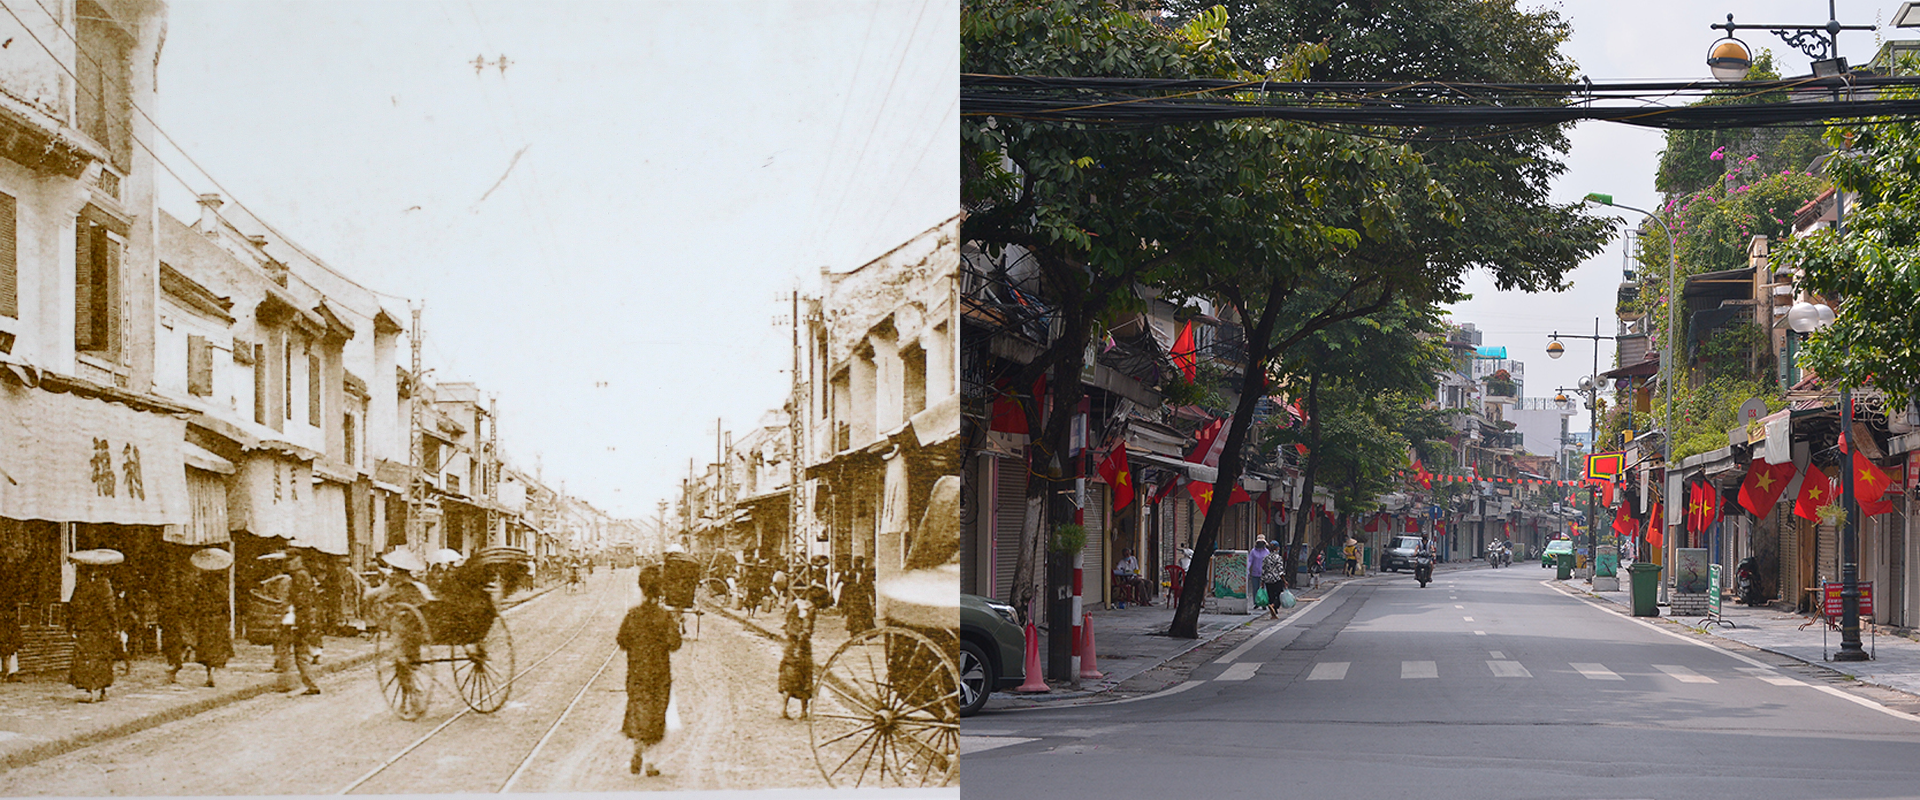 Những hình ảnh thú vị về sự đổi thay của Hà Nội sau 100 năm - Ảnh 5.